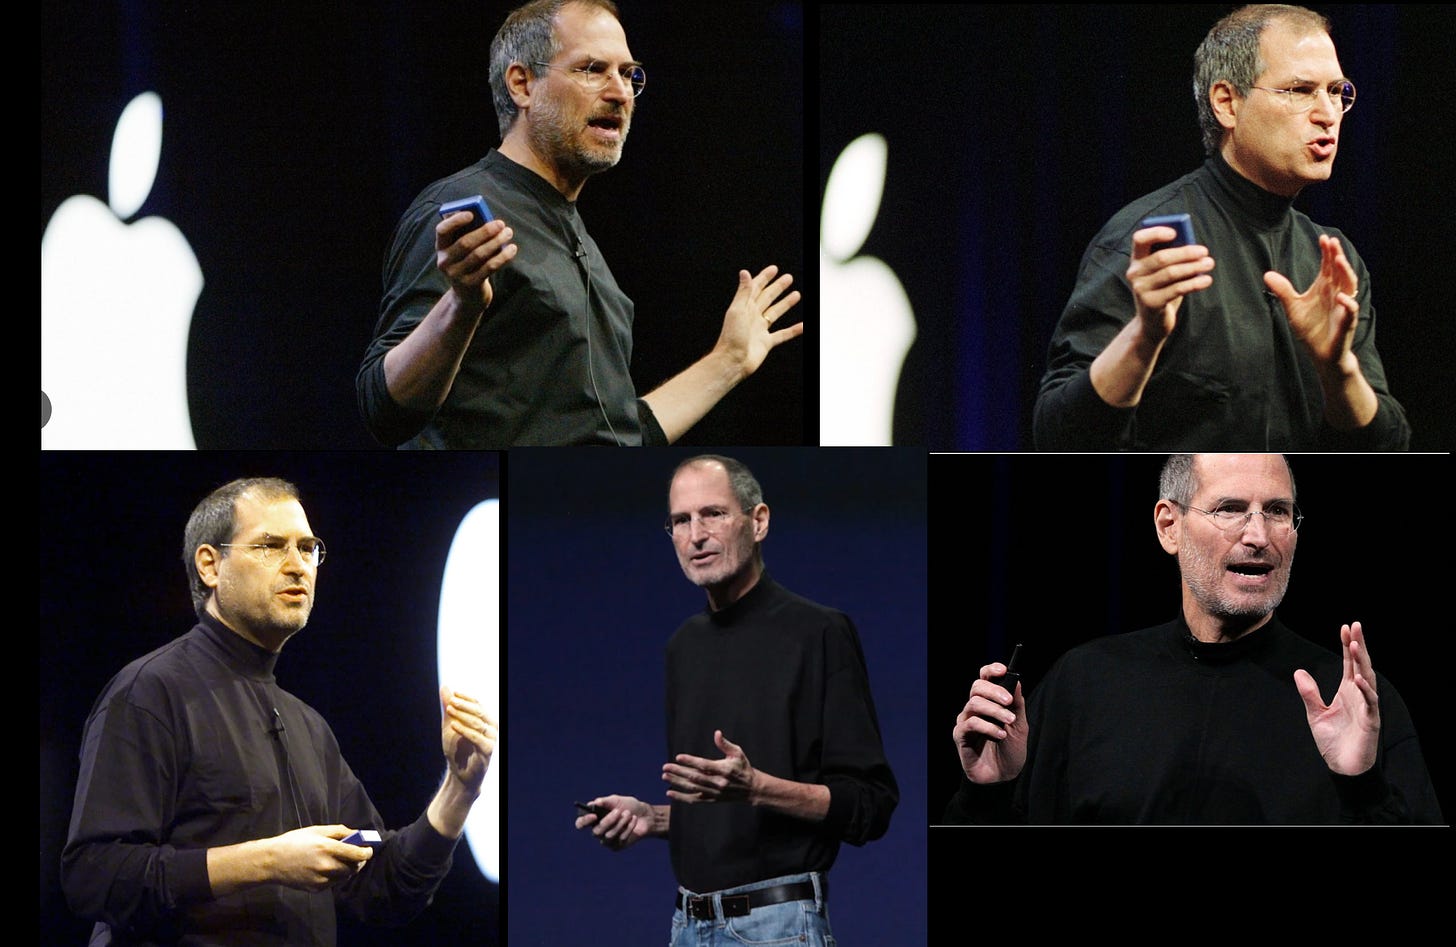 Steve Jobs always has his hands open in each image